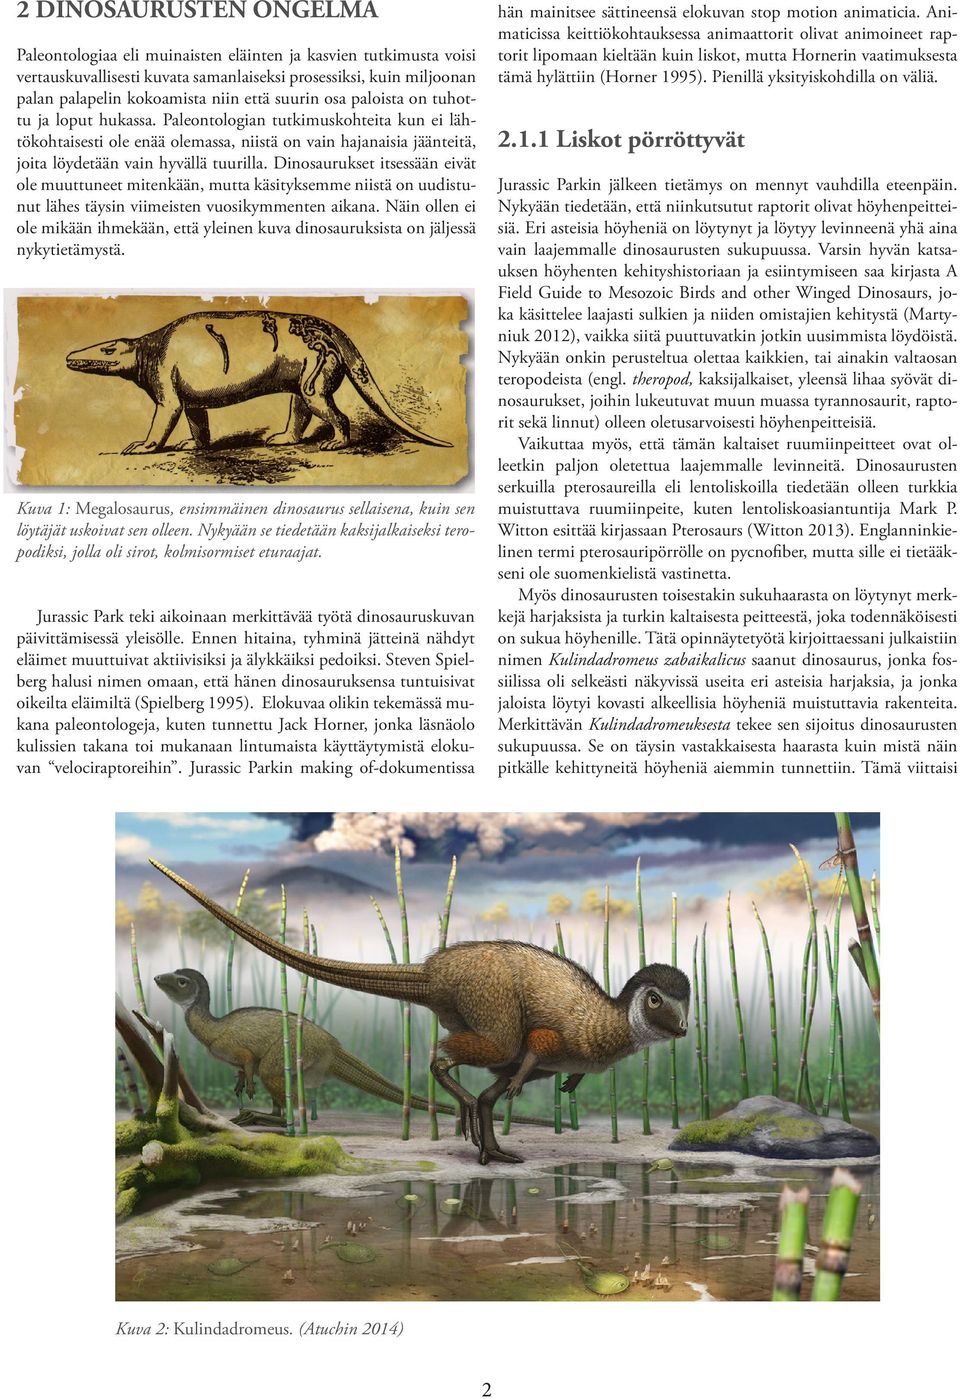 Dinosaurukset itsessään eivät ole muuttuneet mitenkään, mutta käsityksemme niistä on uudistunut lähes täysin viimeisten vuosikymmenten aikana.